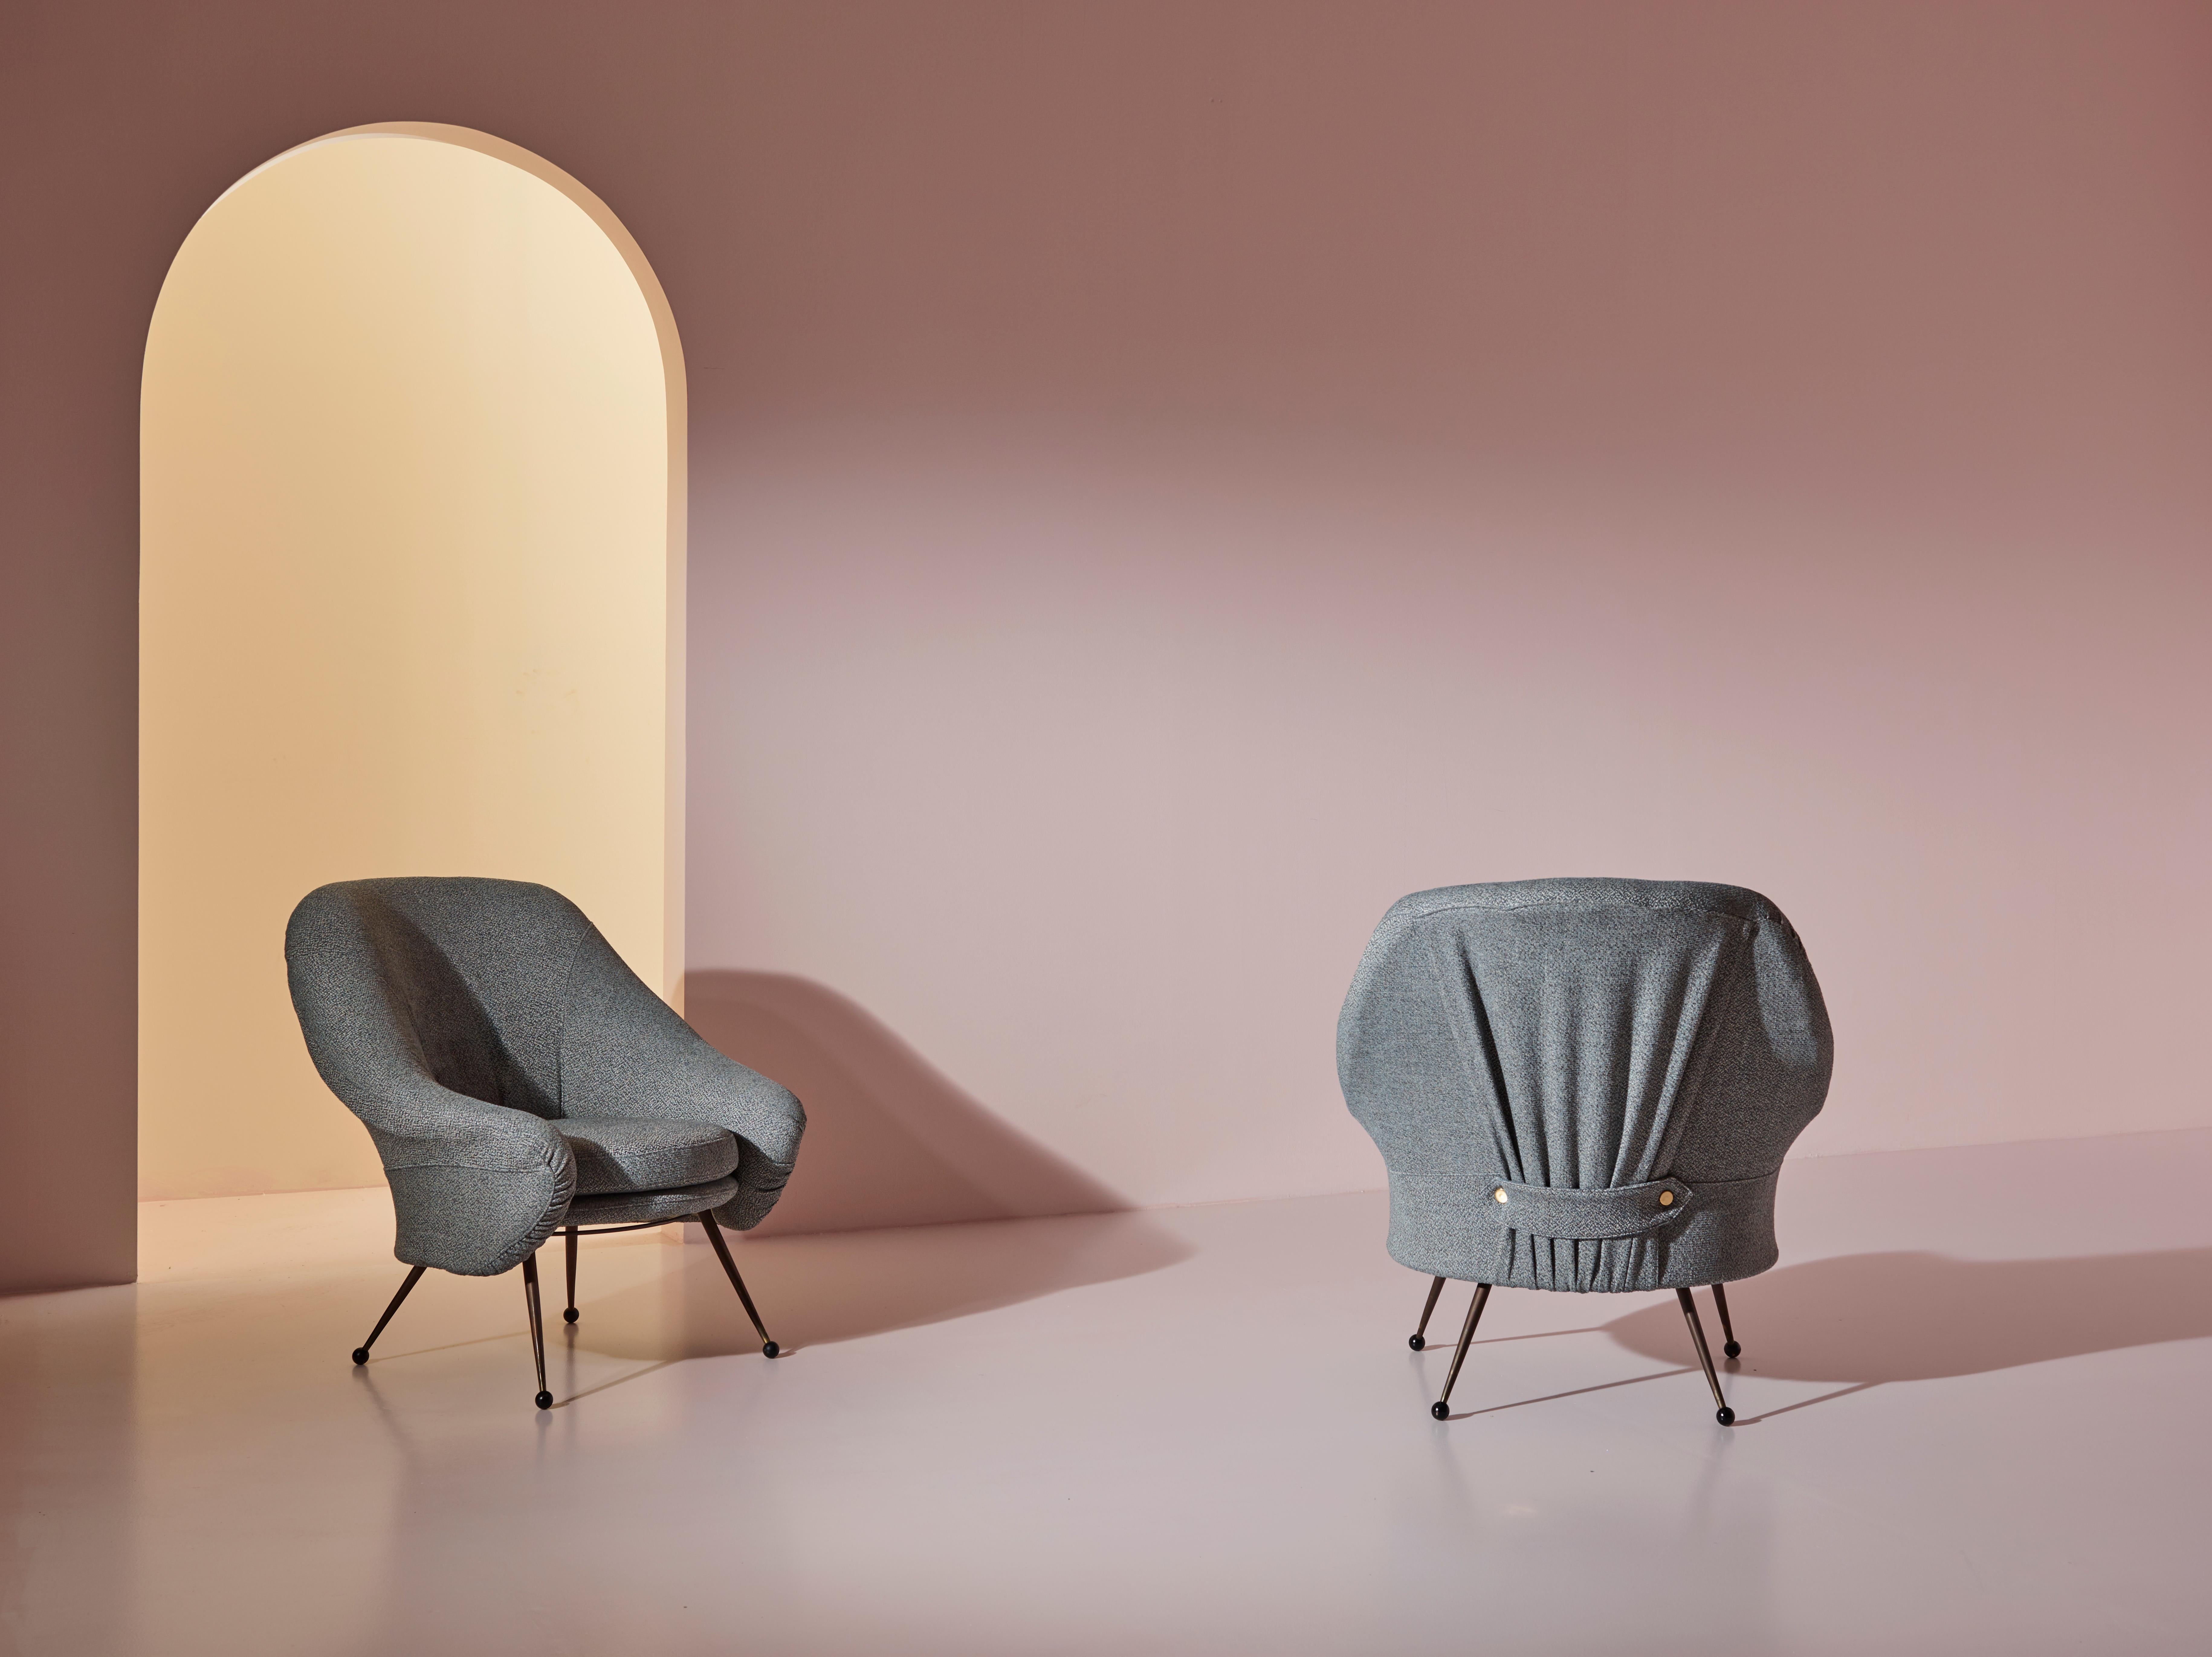 Une élégante paire de fauteuils Martingala de Marco Zanuso pour Arflex, conçus dans les années 1950 et retapissés dans un tissu gris de haute qualité, est aujourd'hui en excellent état.

Les chaises se caractérisent par des lignes épurées, une forme